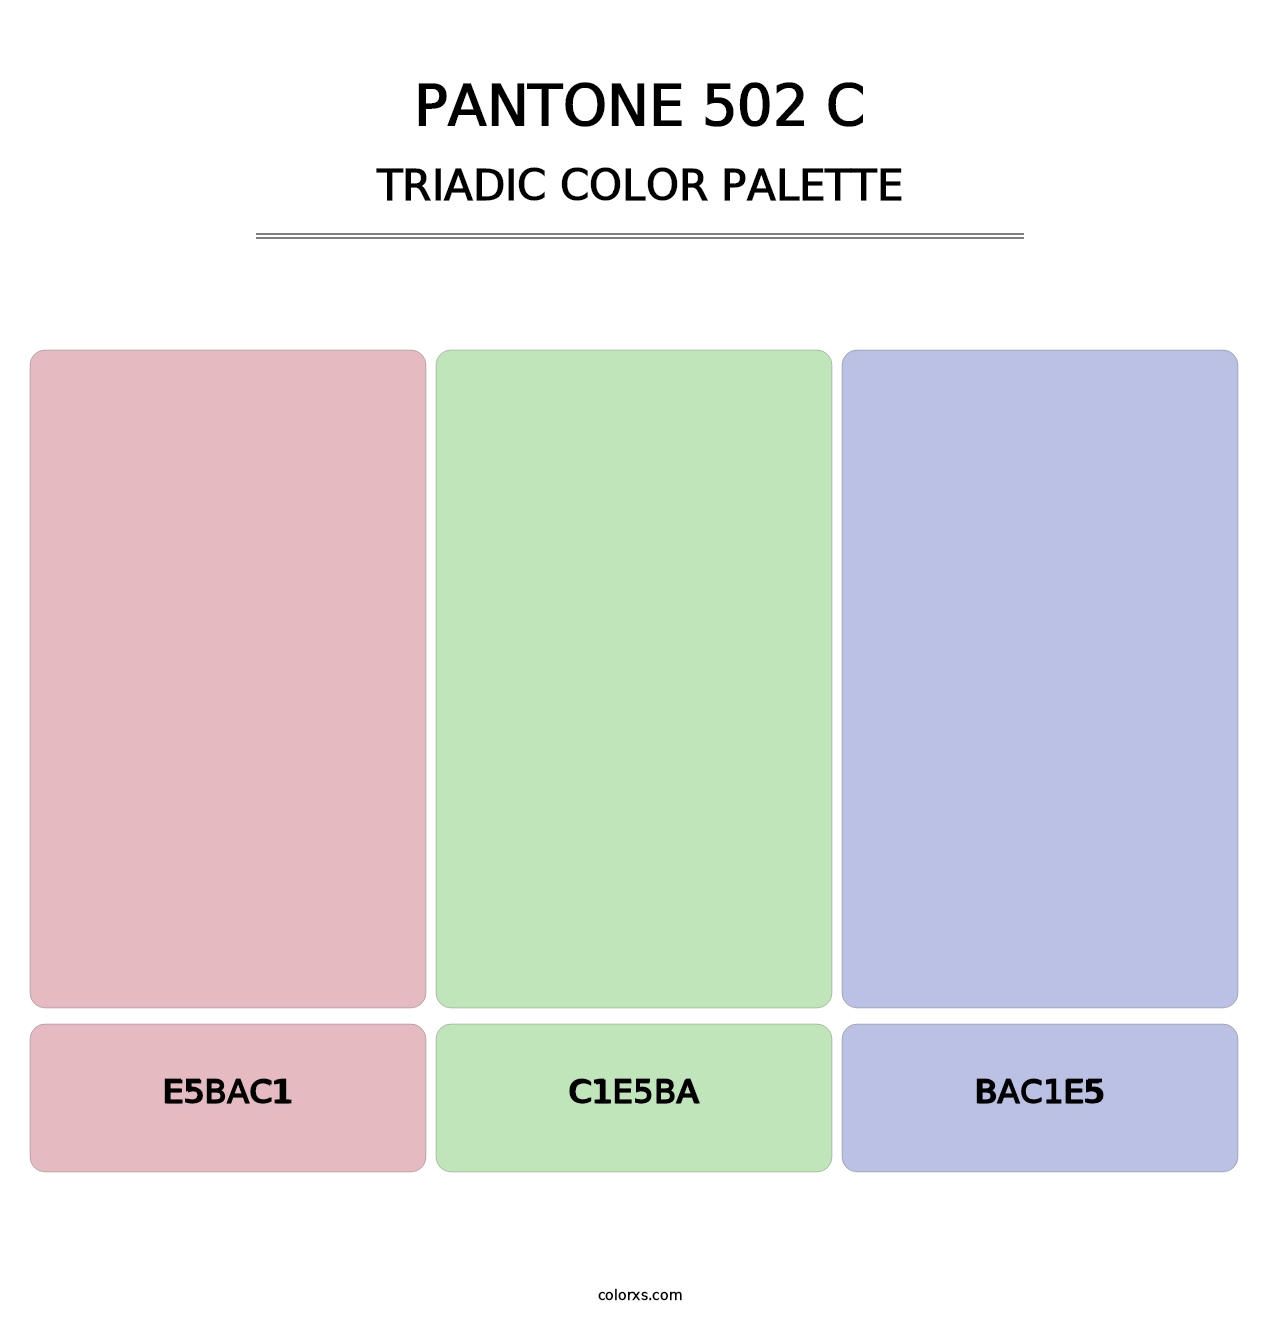 PANTONE 502 C - Triadic Color Palette